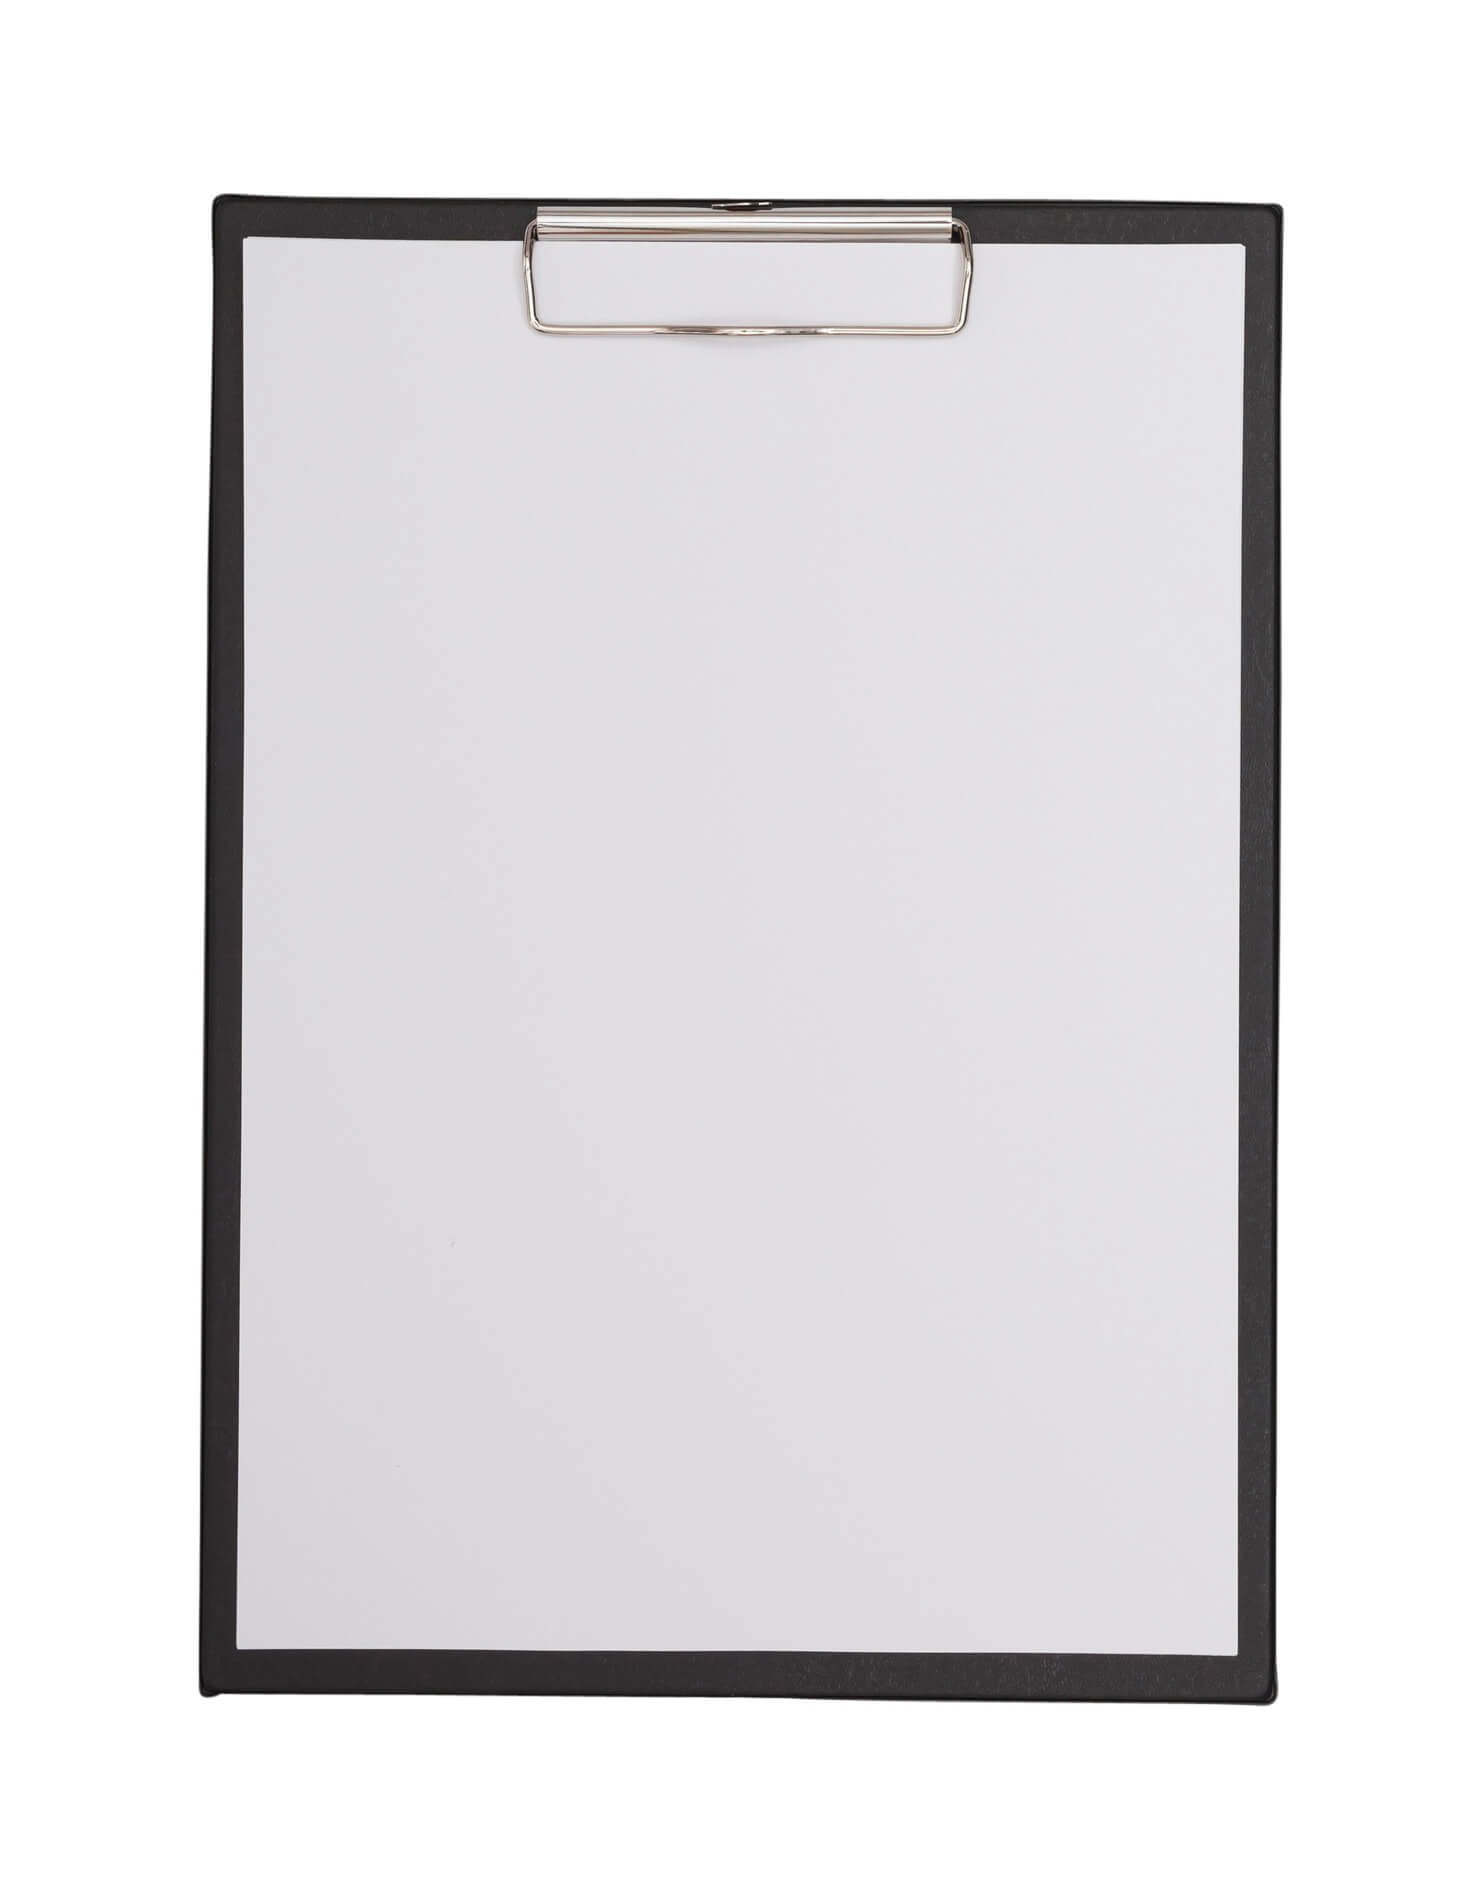 A4 Schreibplatte mit Folien- überzug und Klarsichtfach, schwarz